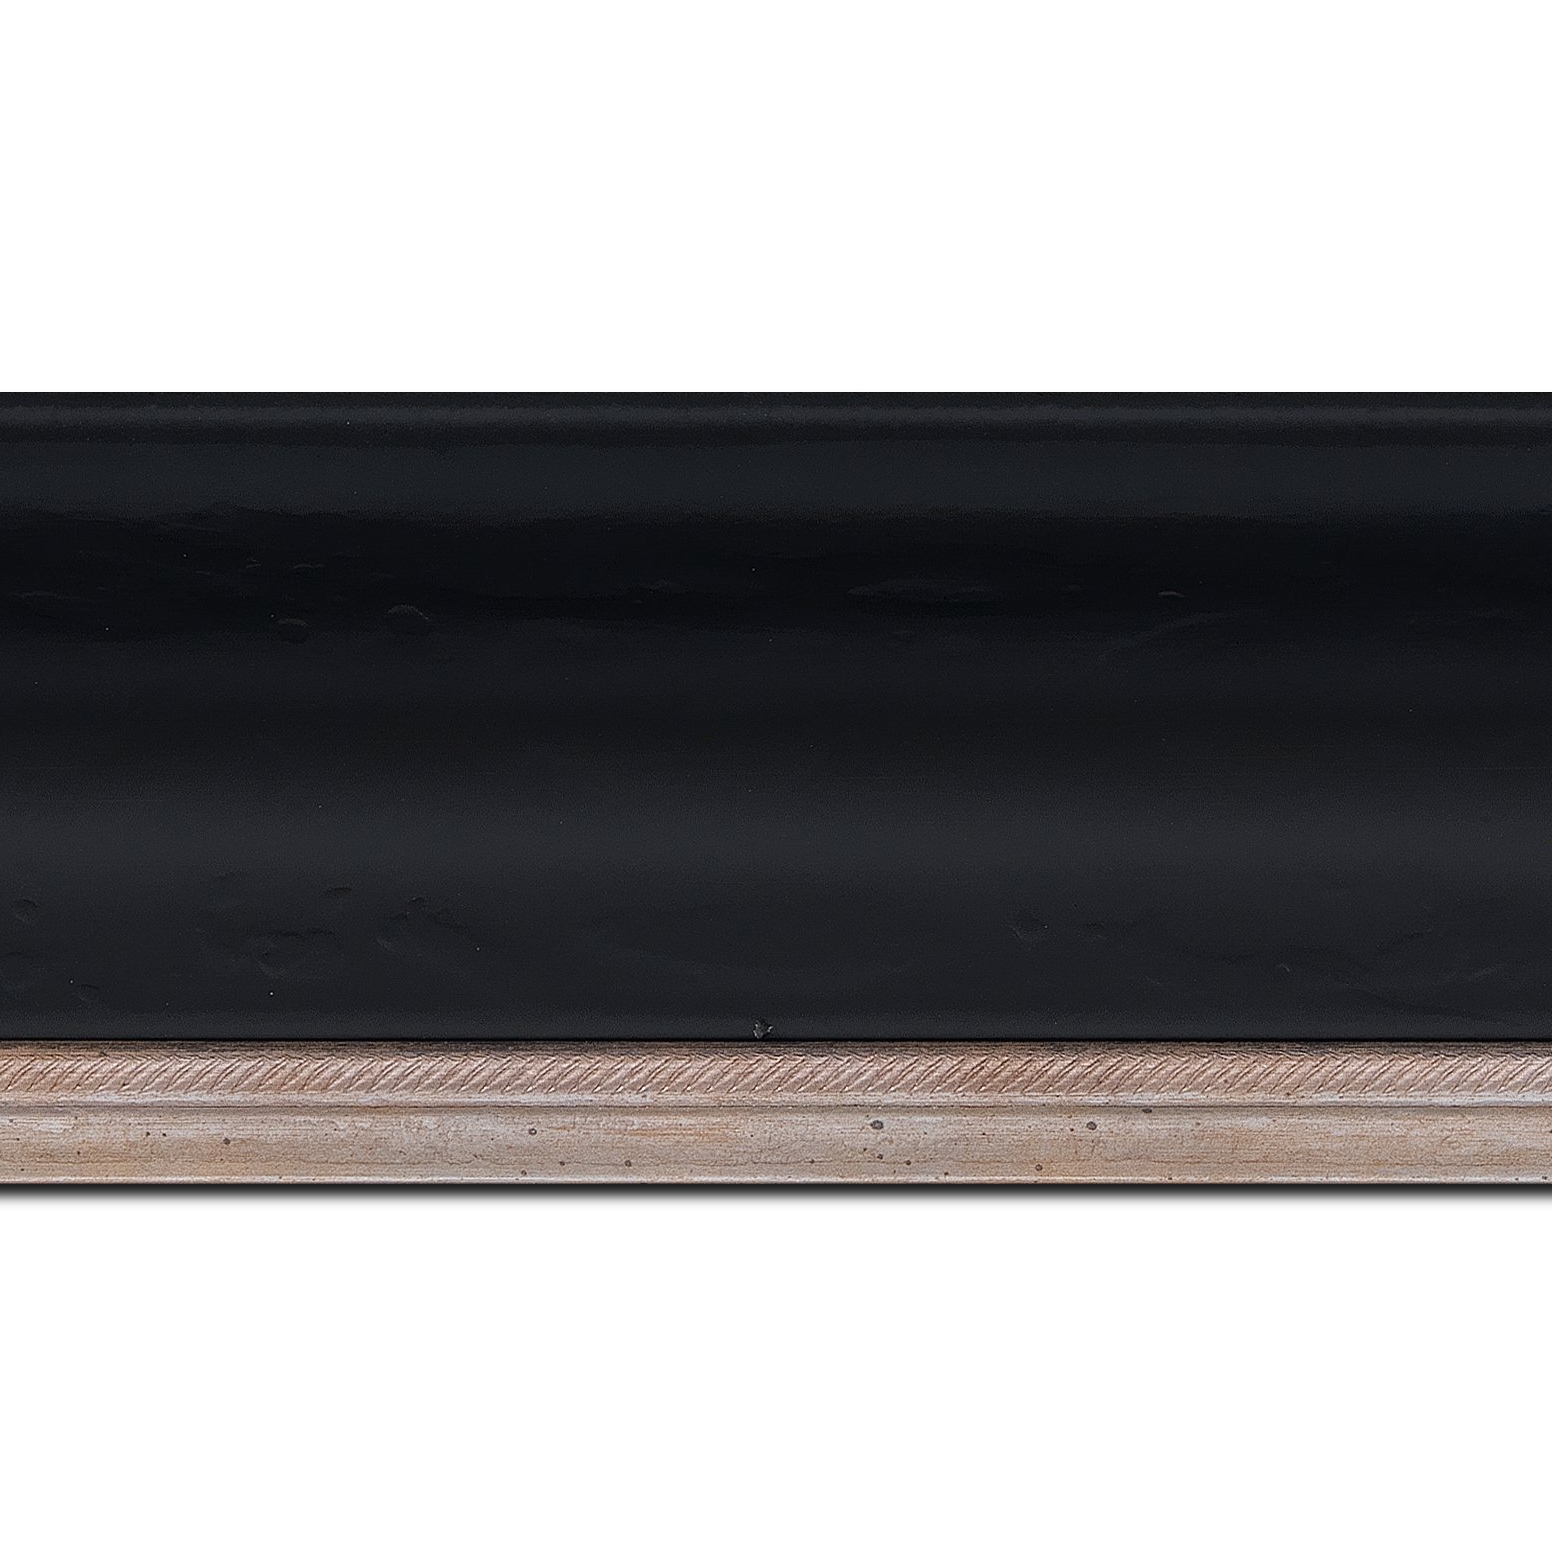 Baguette longueur 1.40m bois profil incurvé largeur 7.5cm de couleur noir finition antique filet argent vermeille